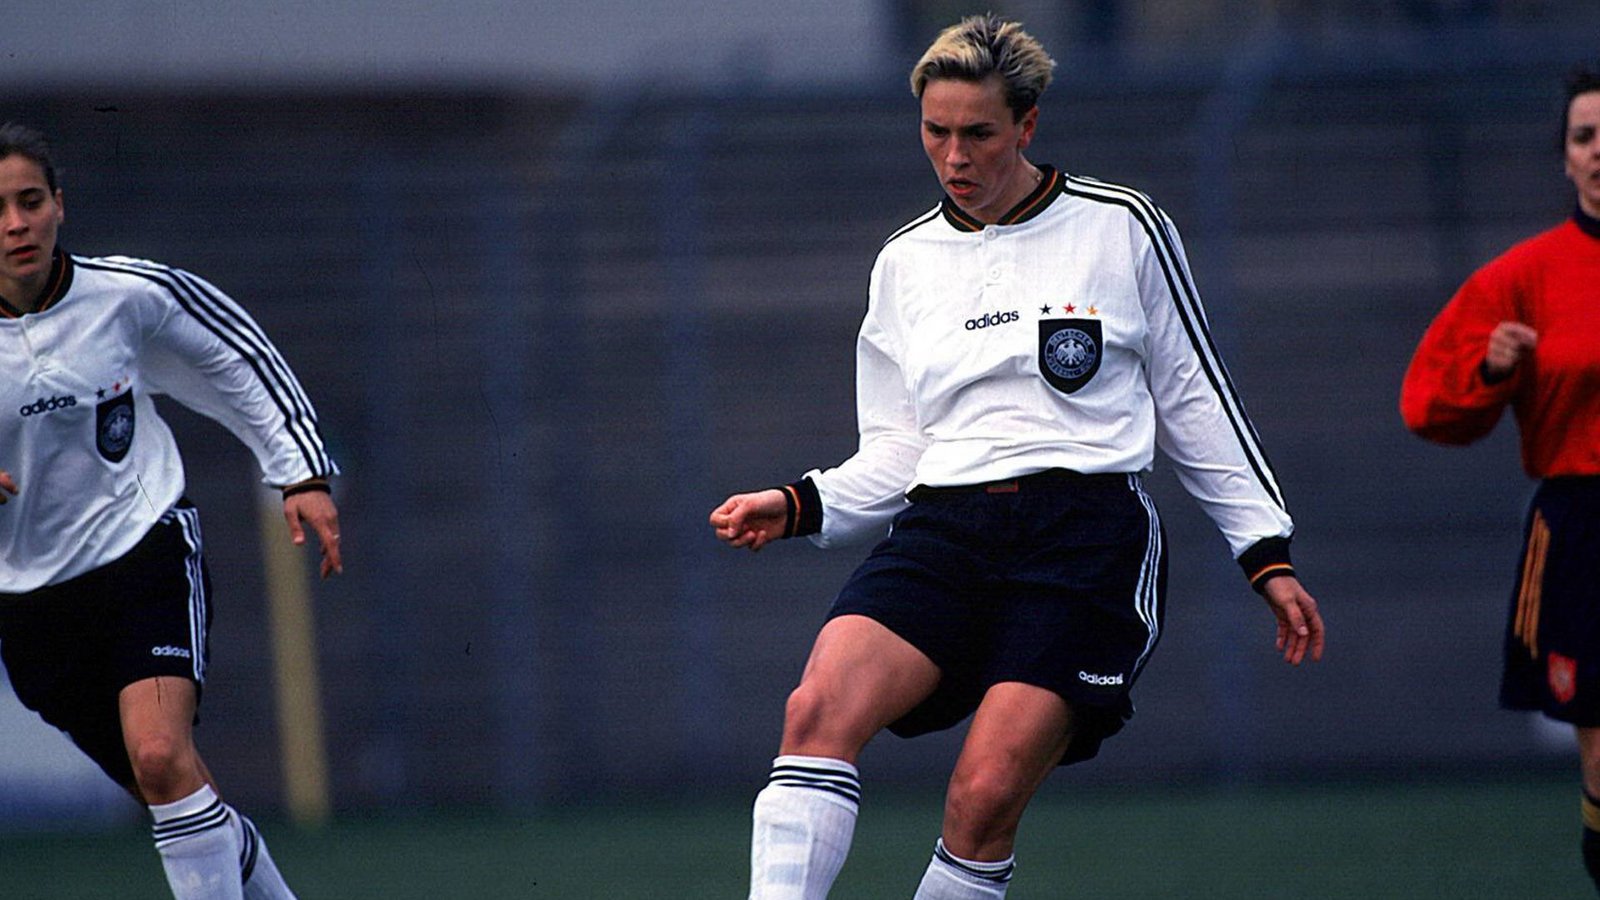 1997 holten die DFB-Frauen den EM-Titel in Oslo durch ein 2:0 im Finale gegen Italien. Sandra Minnert (Foto) erzielte  das 1:0, Birgit Prinz erhöhte auf 2:0. Die Partie sahen nur 2221 Zuschauer.Foto: imago/Claus Bergmann/imago sportfotodienst